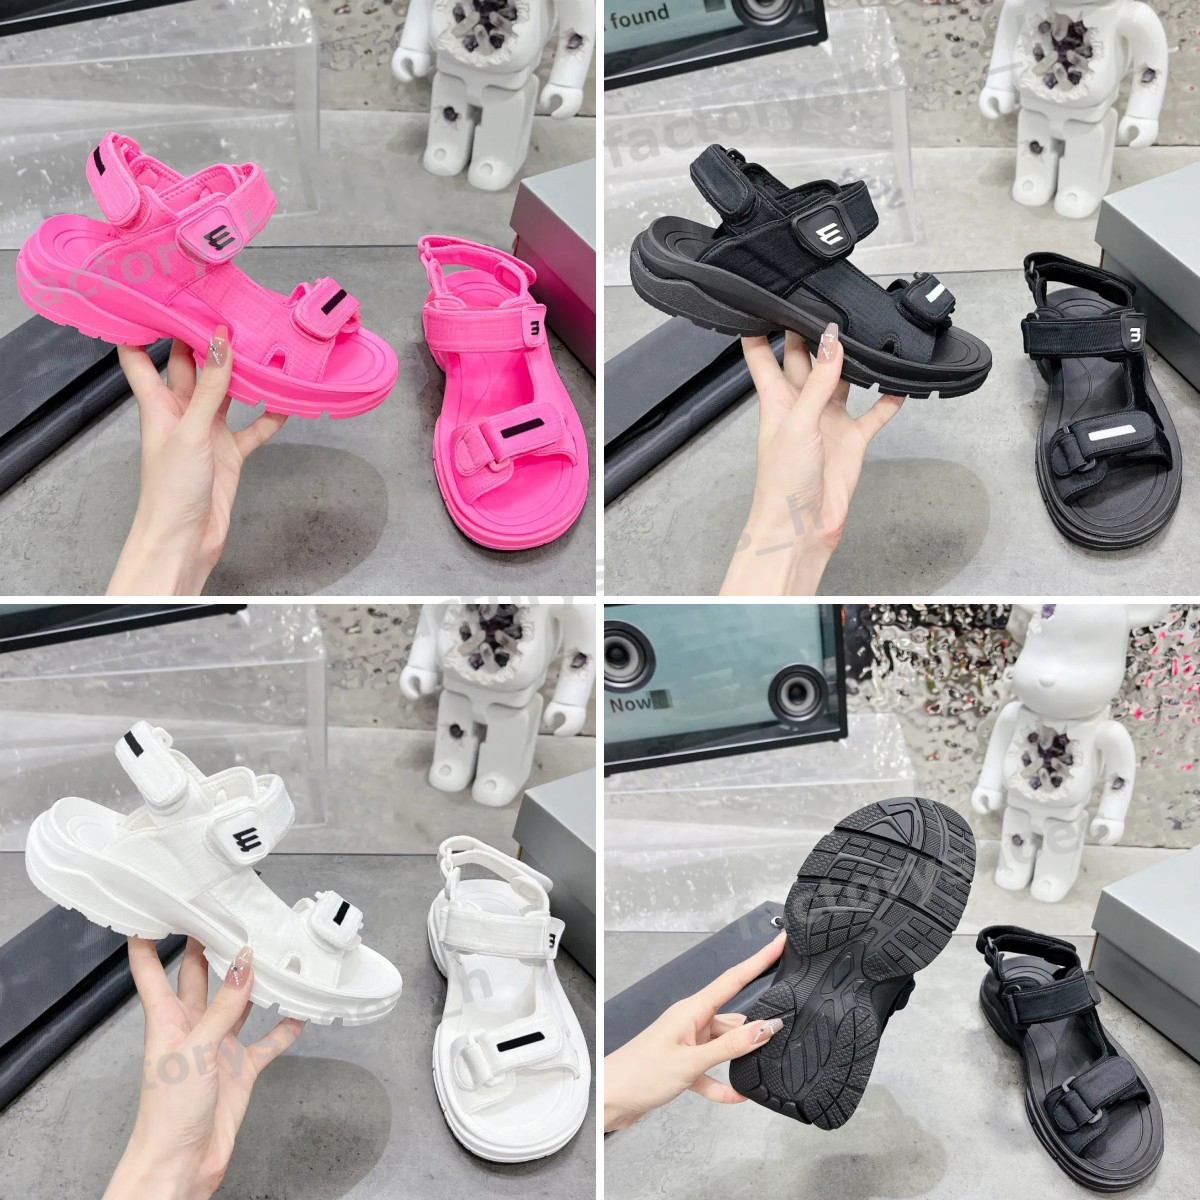 

Designer Sandals Tourist Sandal Women Slippers Velcro Sandal Platform Shoes Leather Slipper Rubber Slides Carabiner Buckle Slide Summer Beach Sandal, Fuchsia